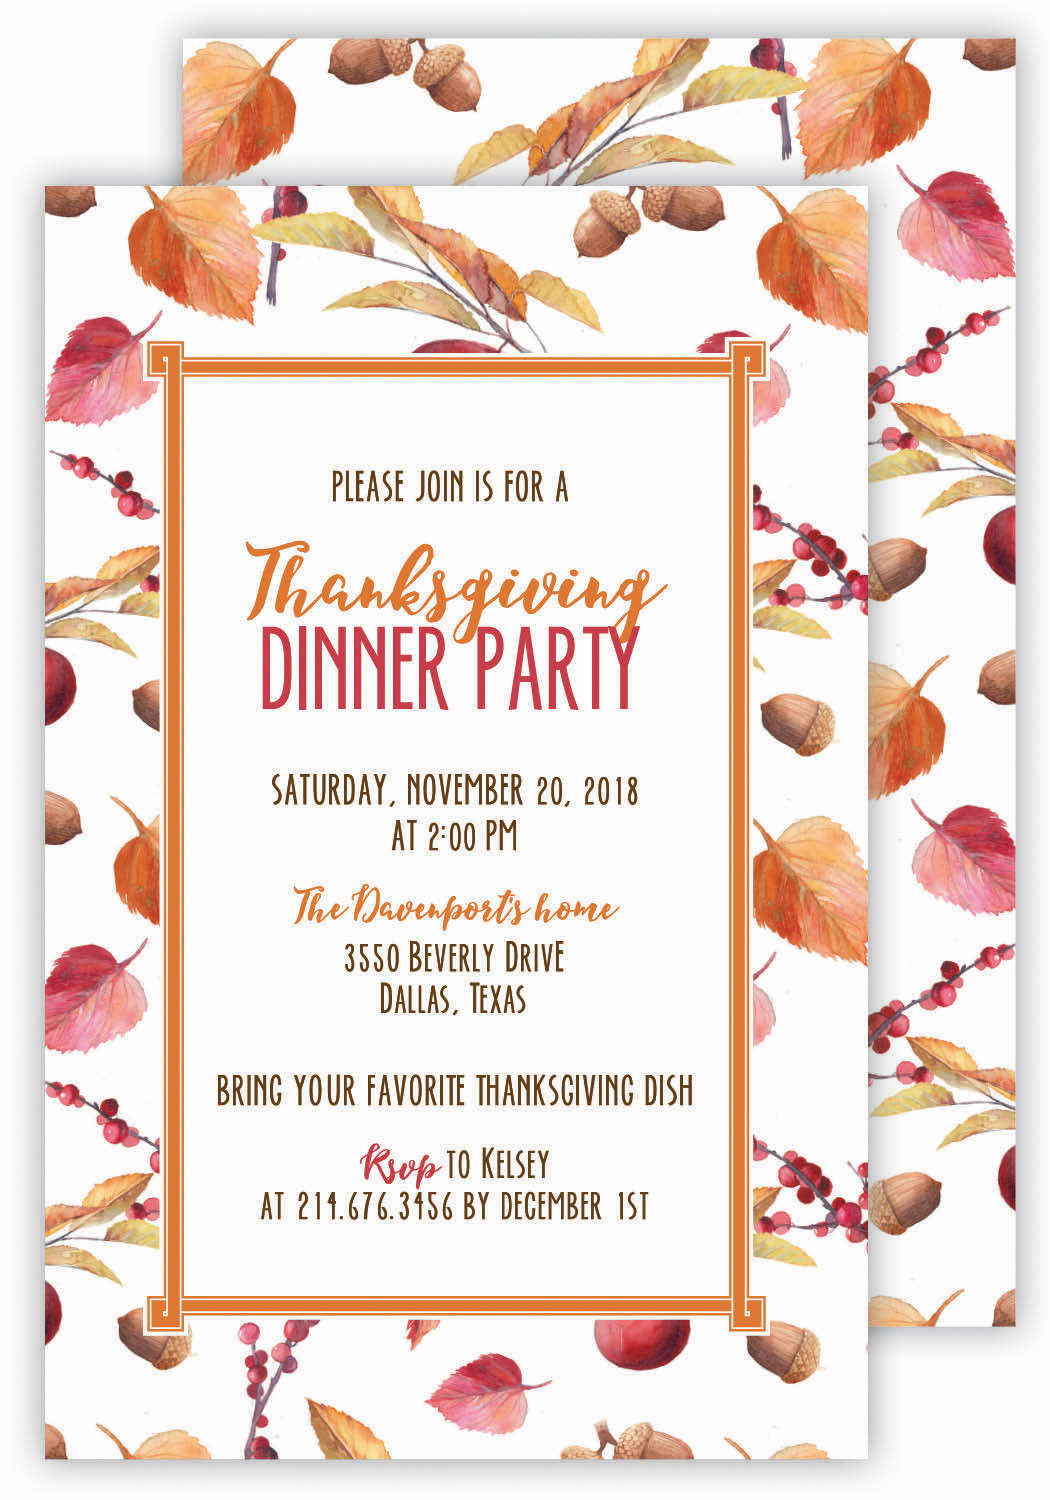 Dinner Party Invitation Ideas
 Thanksgiving Dinner Party Invitation